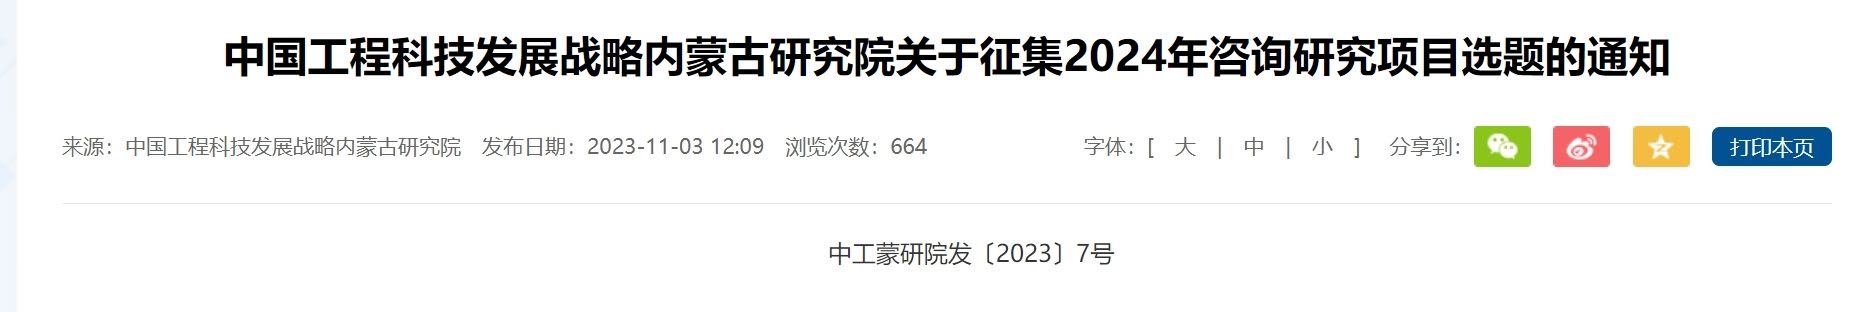 中国工程科技发展战略内蒙古研究院关于征集2024年咨询研究项目选题的通知